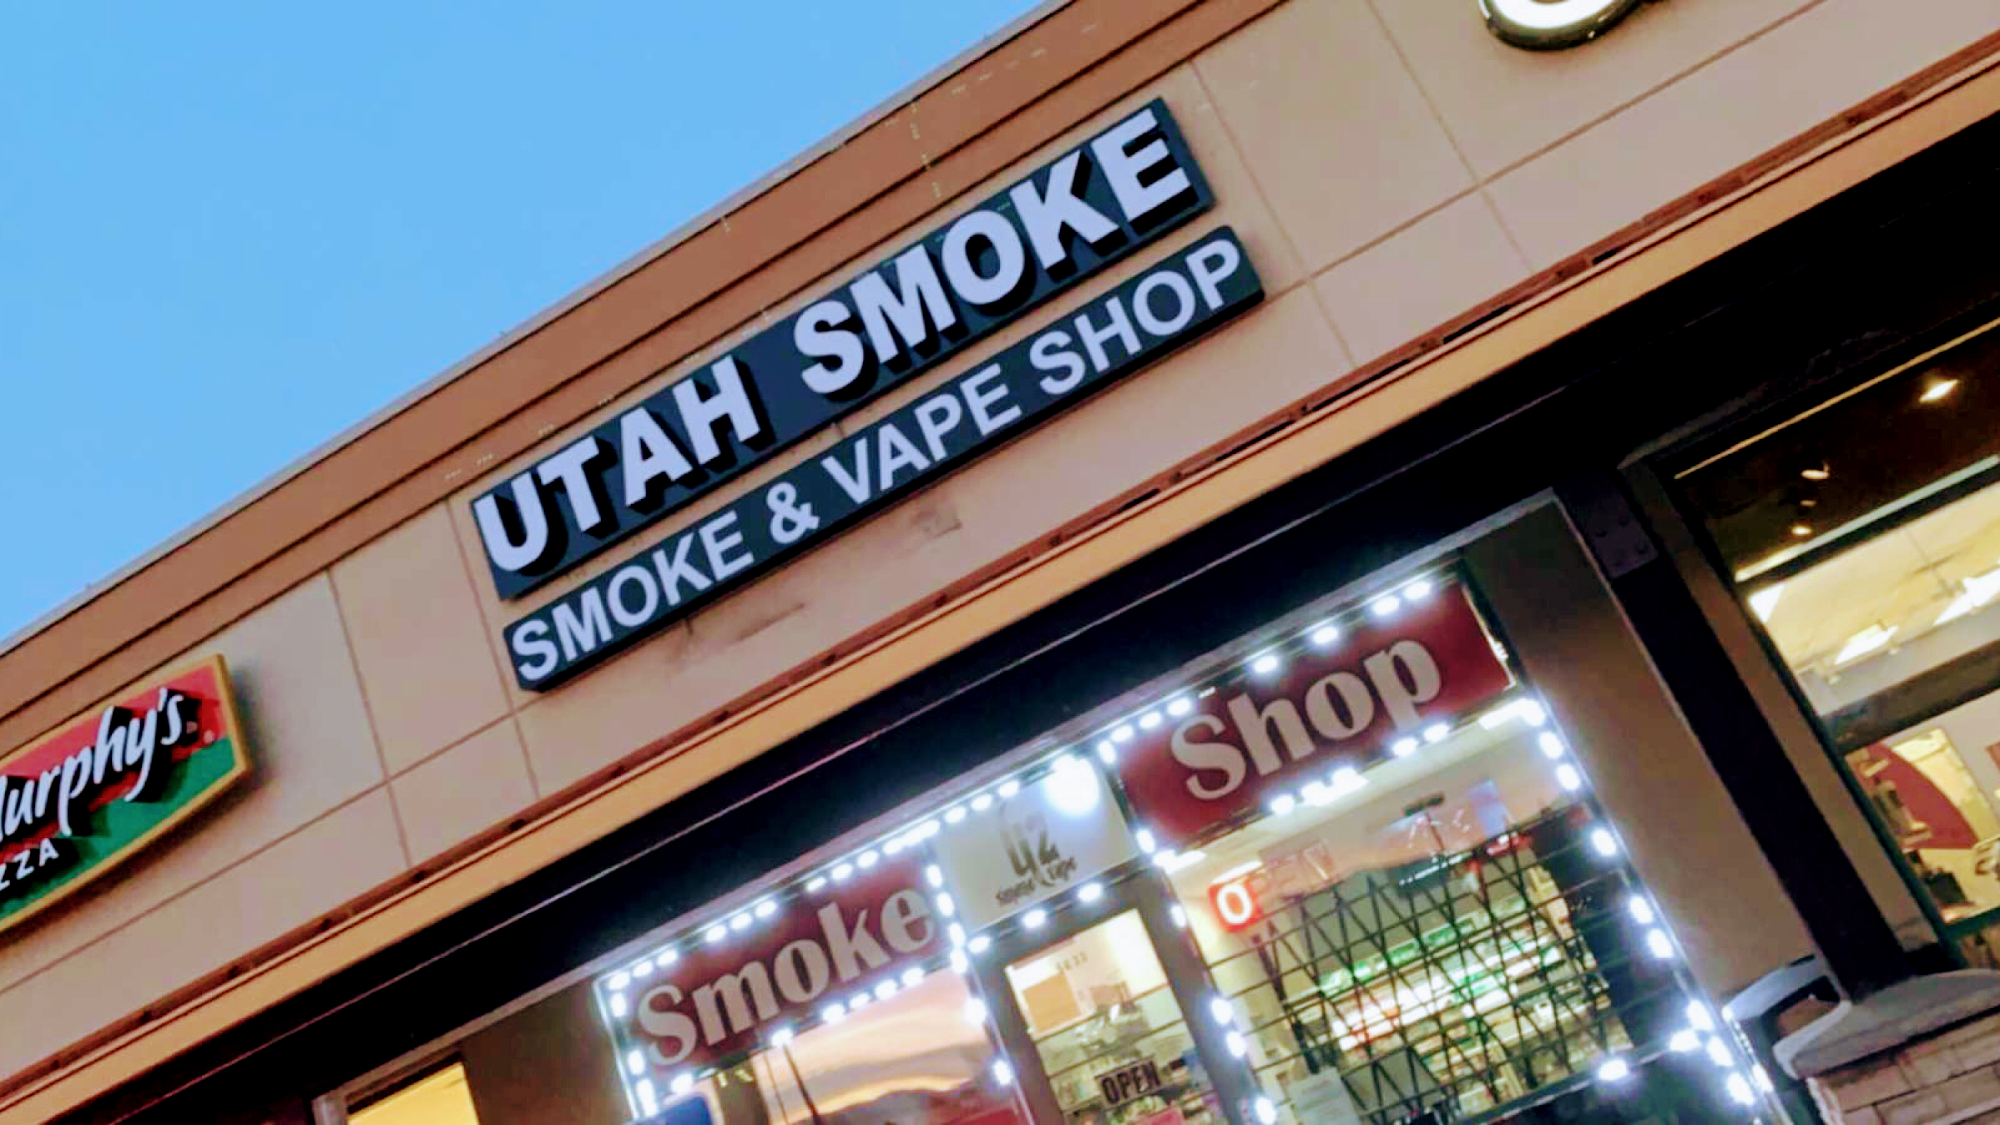 UTAH SMOKE & VAPE